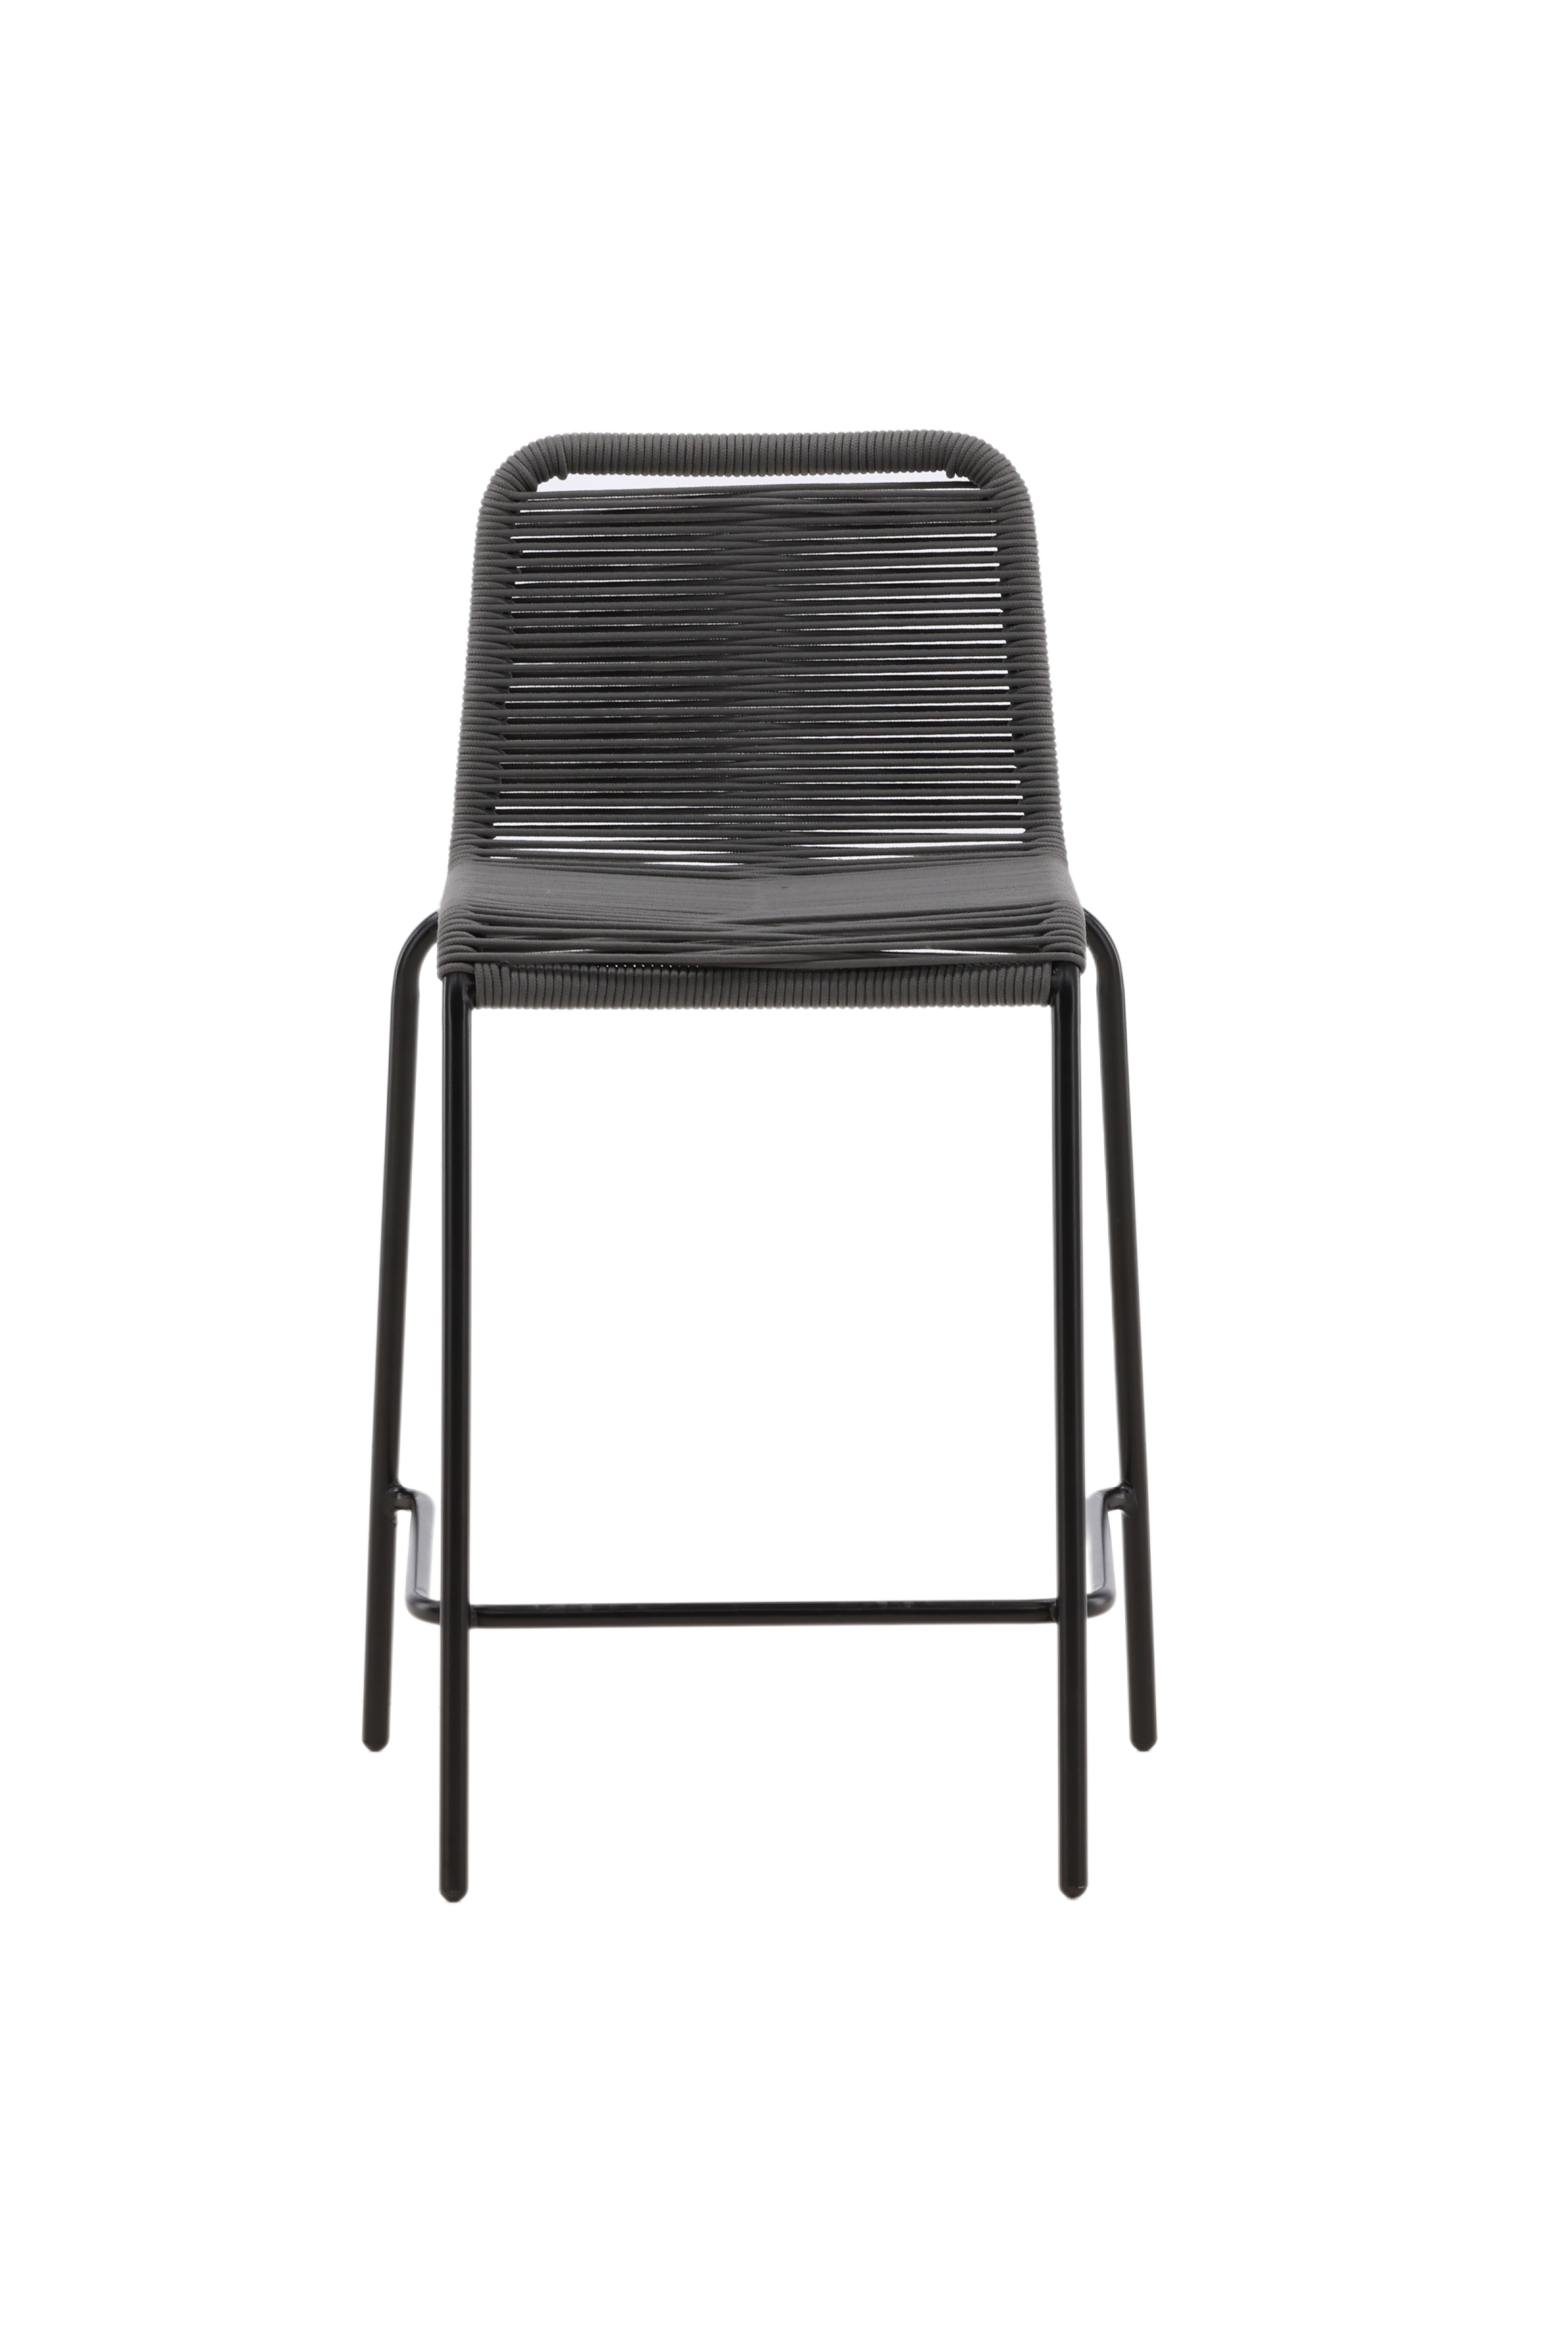 11: VENTURE DESIGN Lindos udendørs barstol, m. ryglæn og fodstøtte - mørkegrå reb og sort stål